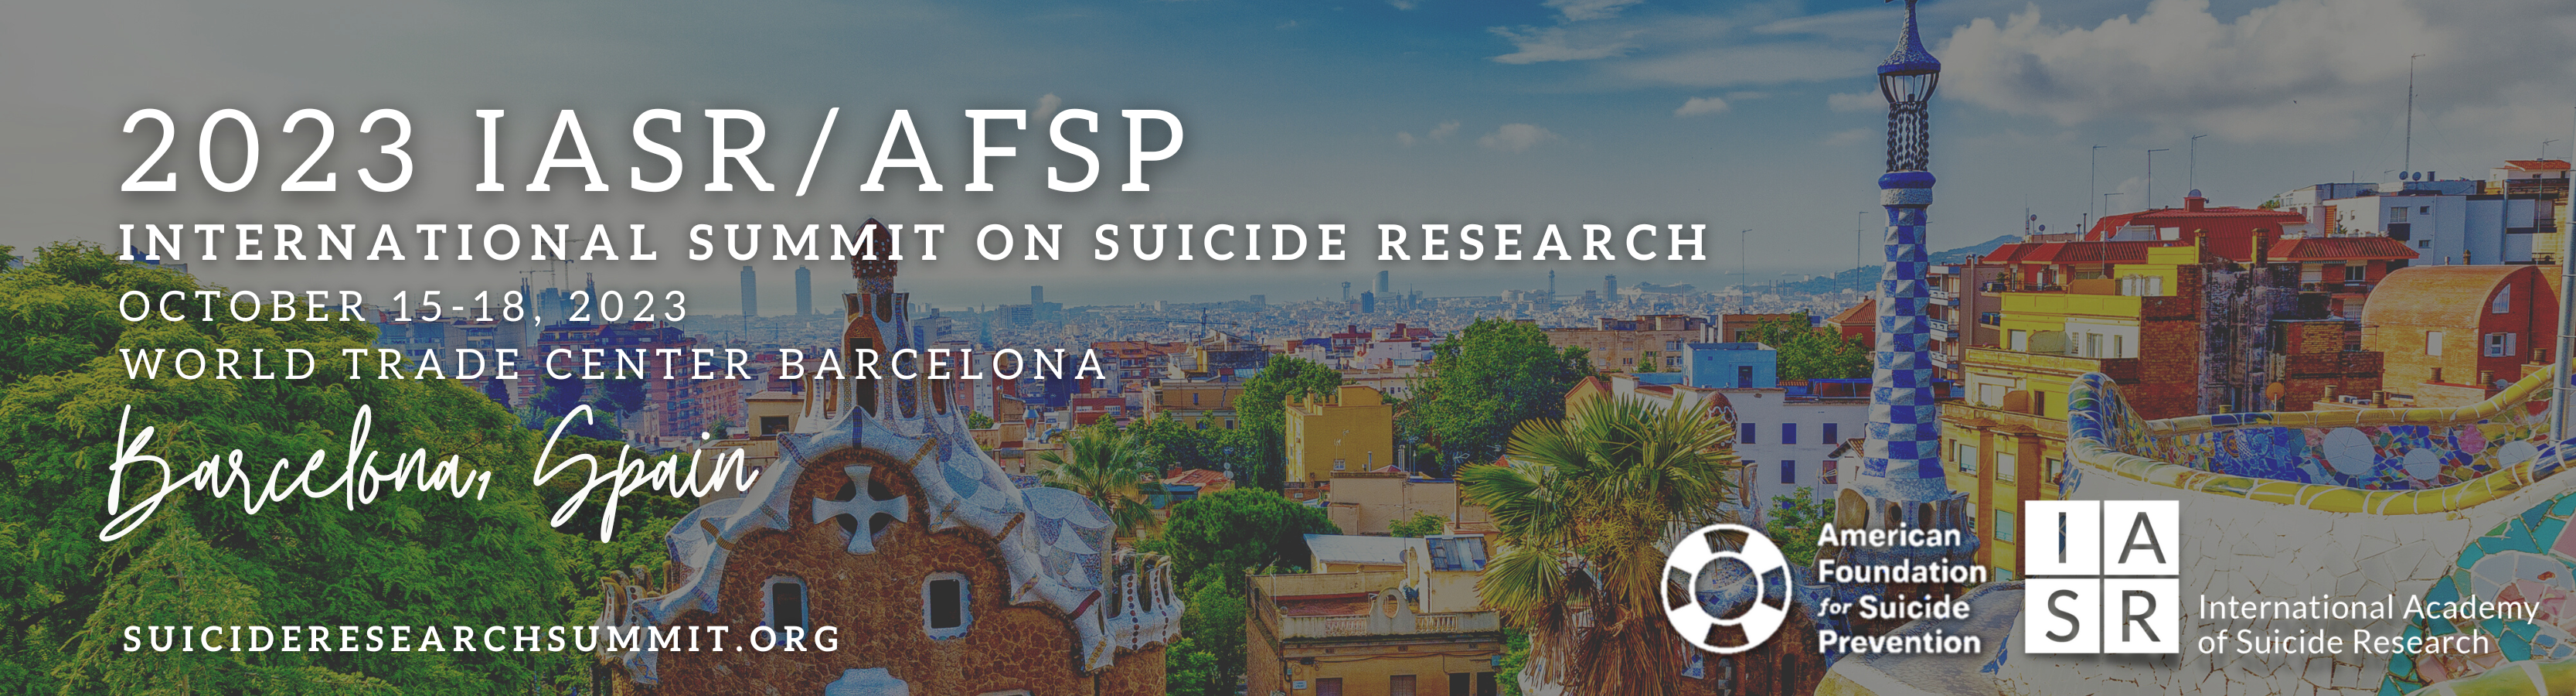 Suicide Research Summit 2023 (IASR / AFSP)